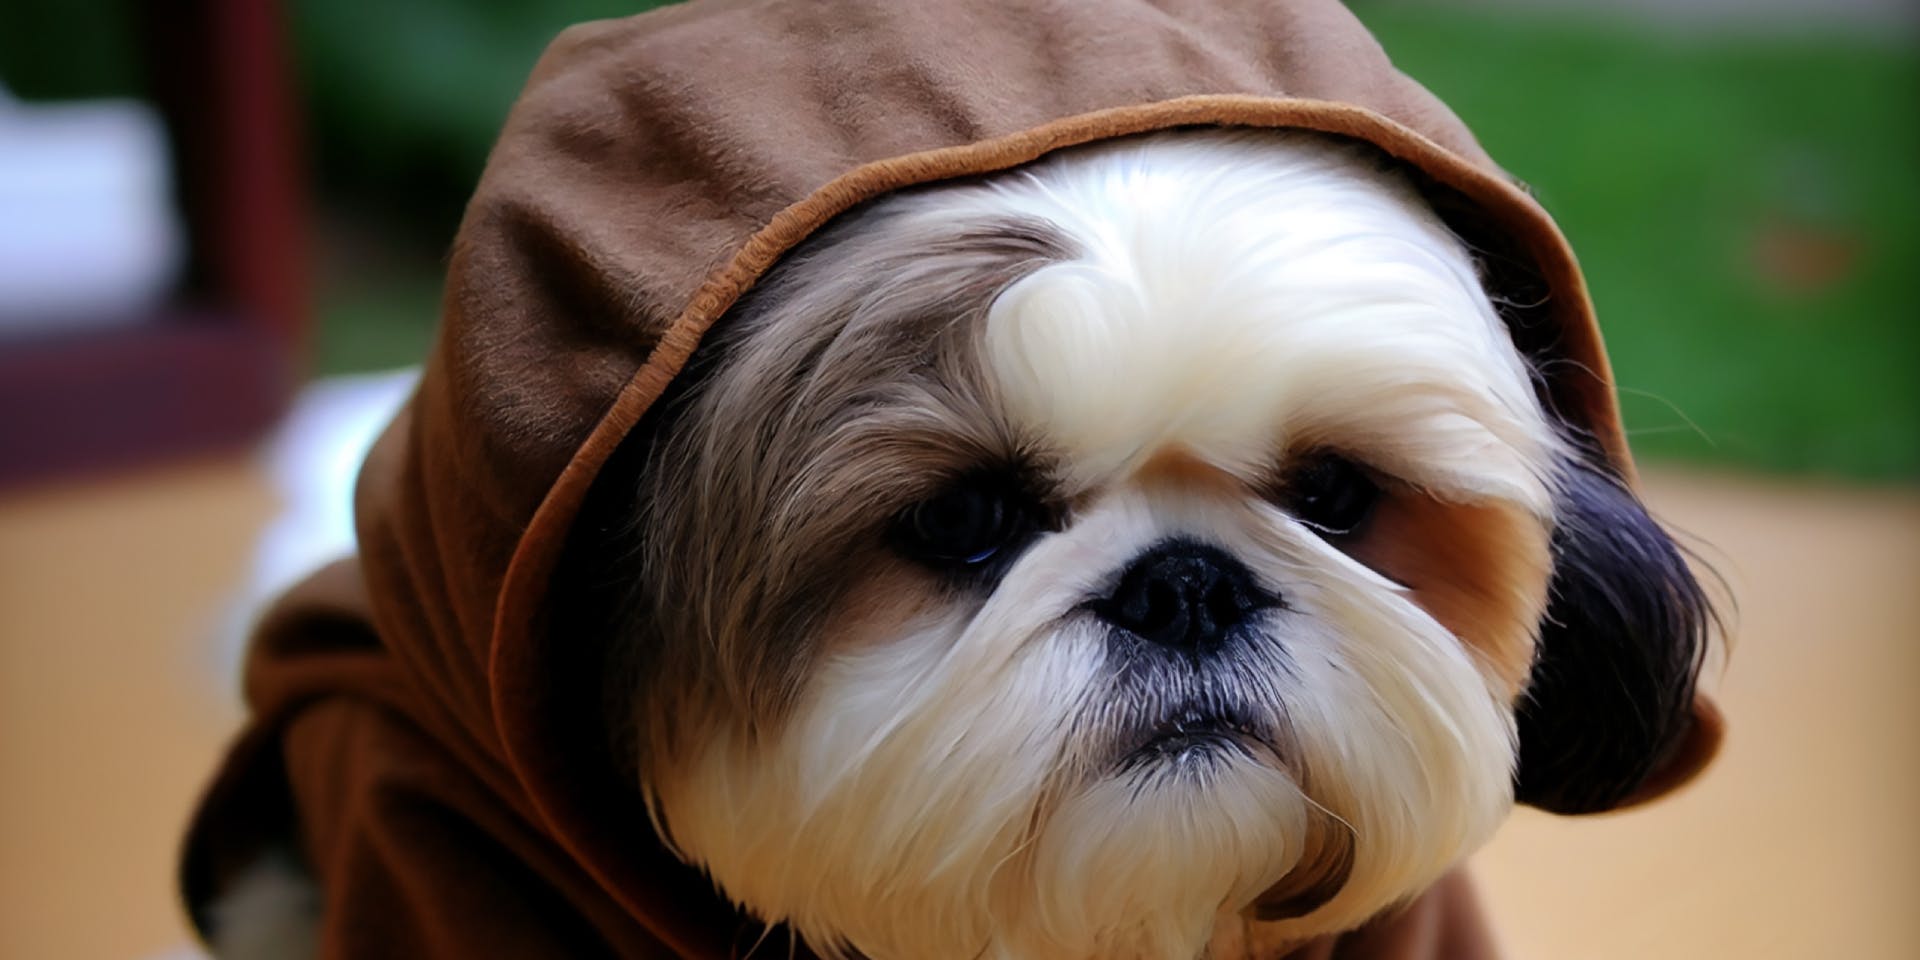 A dog wearing an Ewok costume.